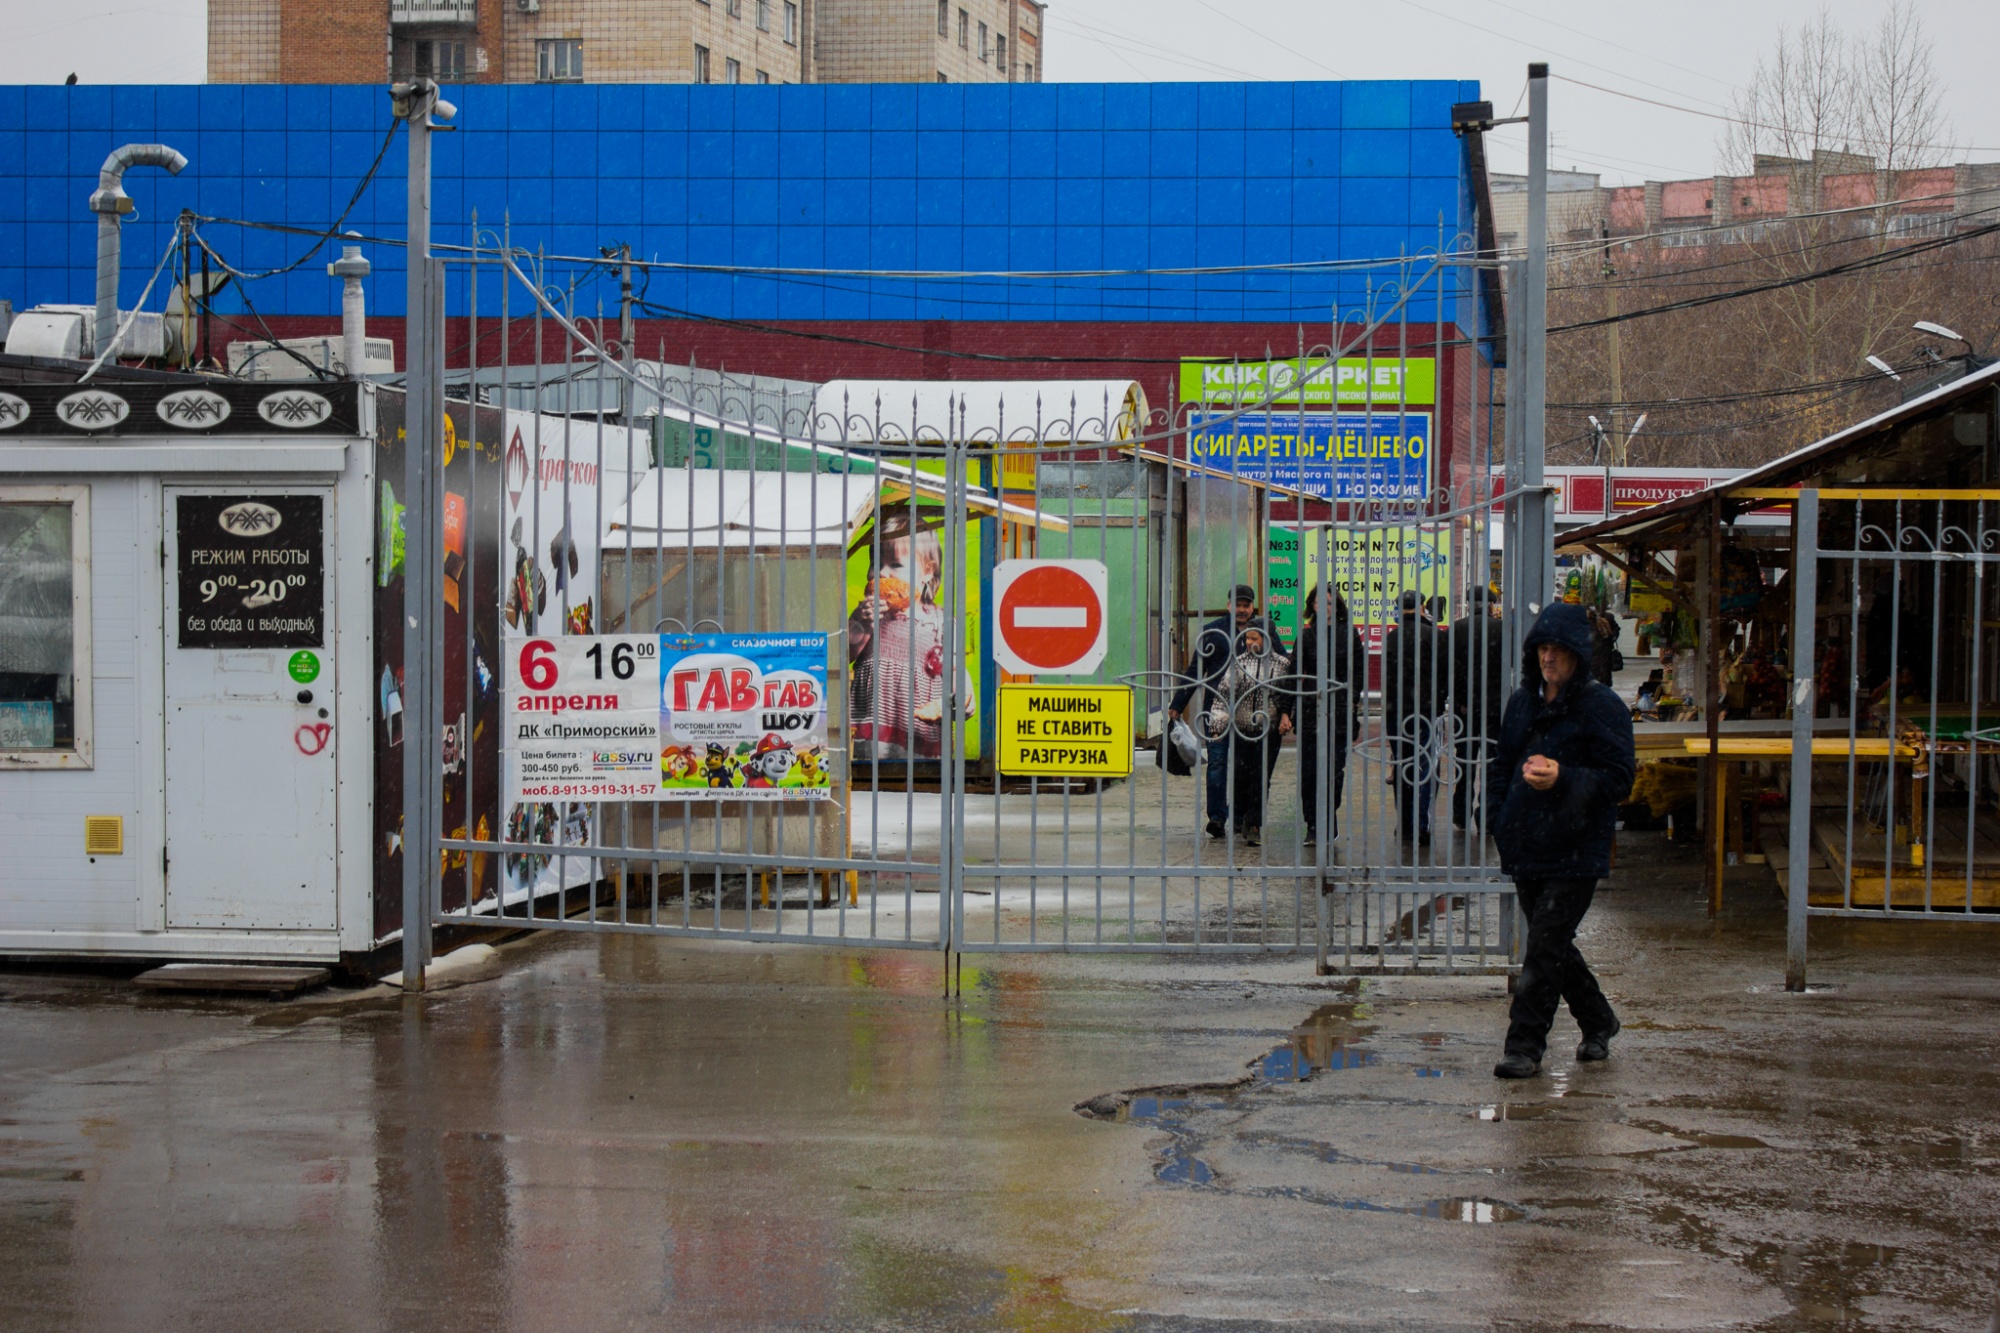 Помощница депутата открыла рынок в охранной зоне, но говорит, что это не рынок